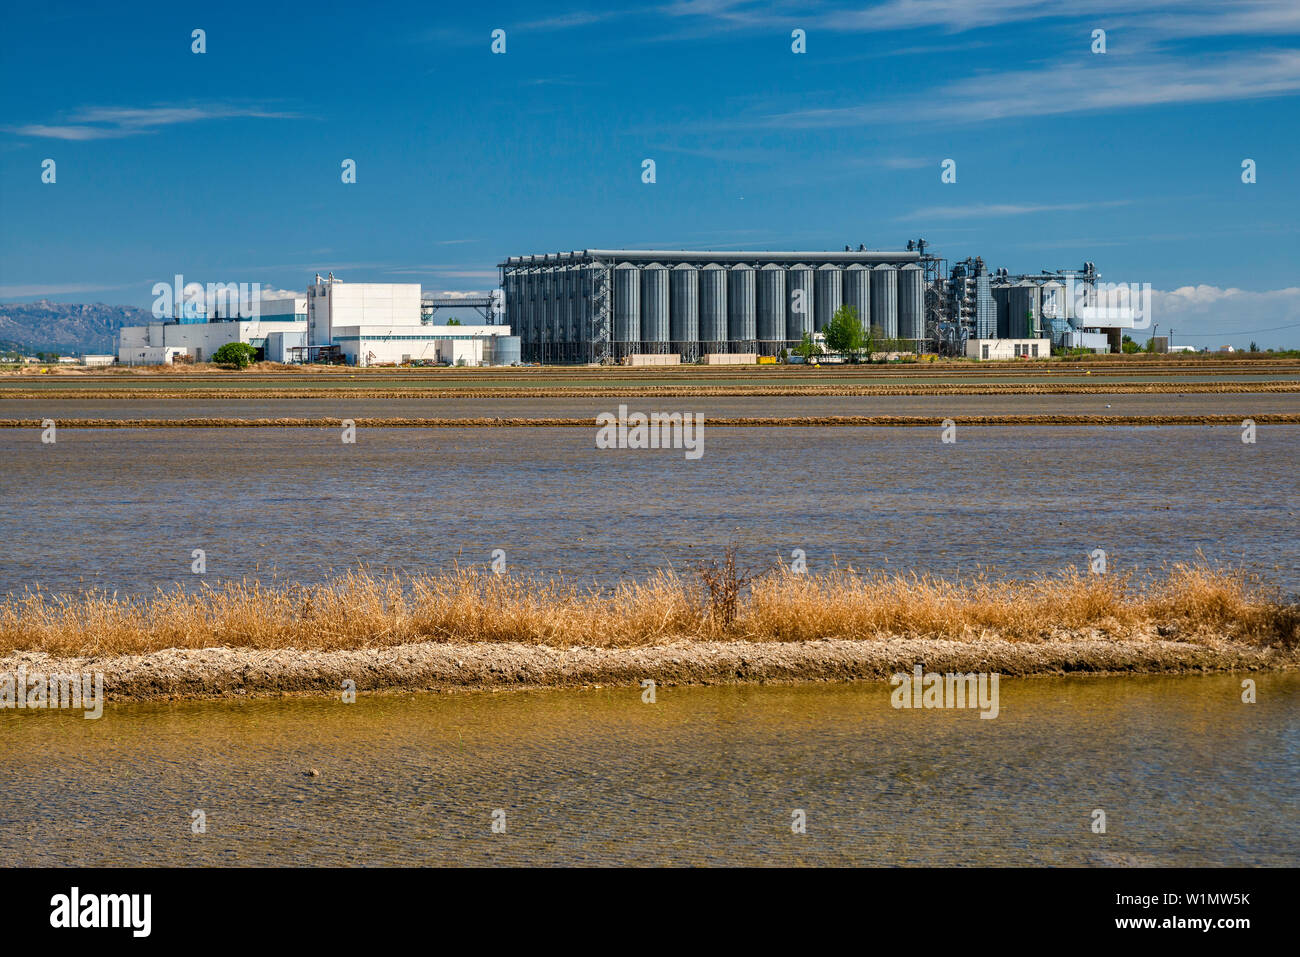 Grain elevator, paddy field for growing rice in delta of Rio Ebro, near Deltebre, Catalonia, Spain Stock Photo